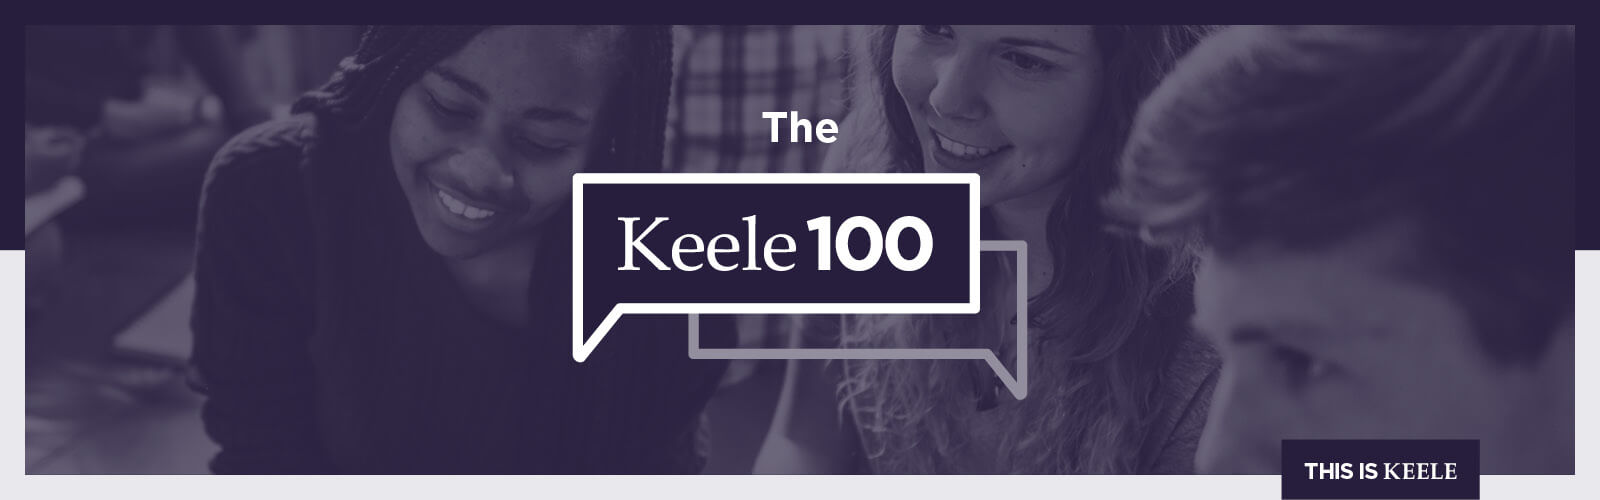 The Keele 100